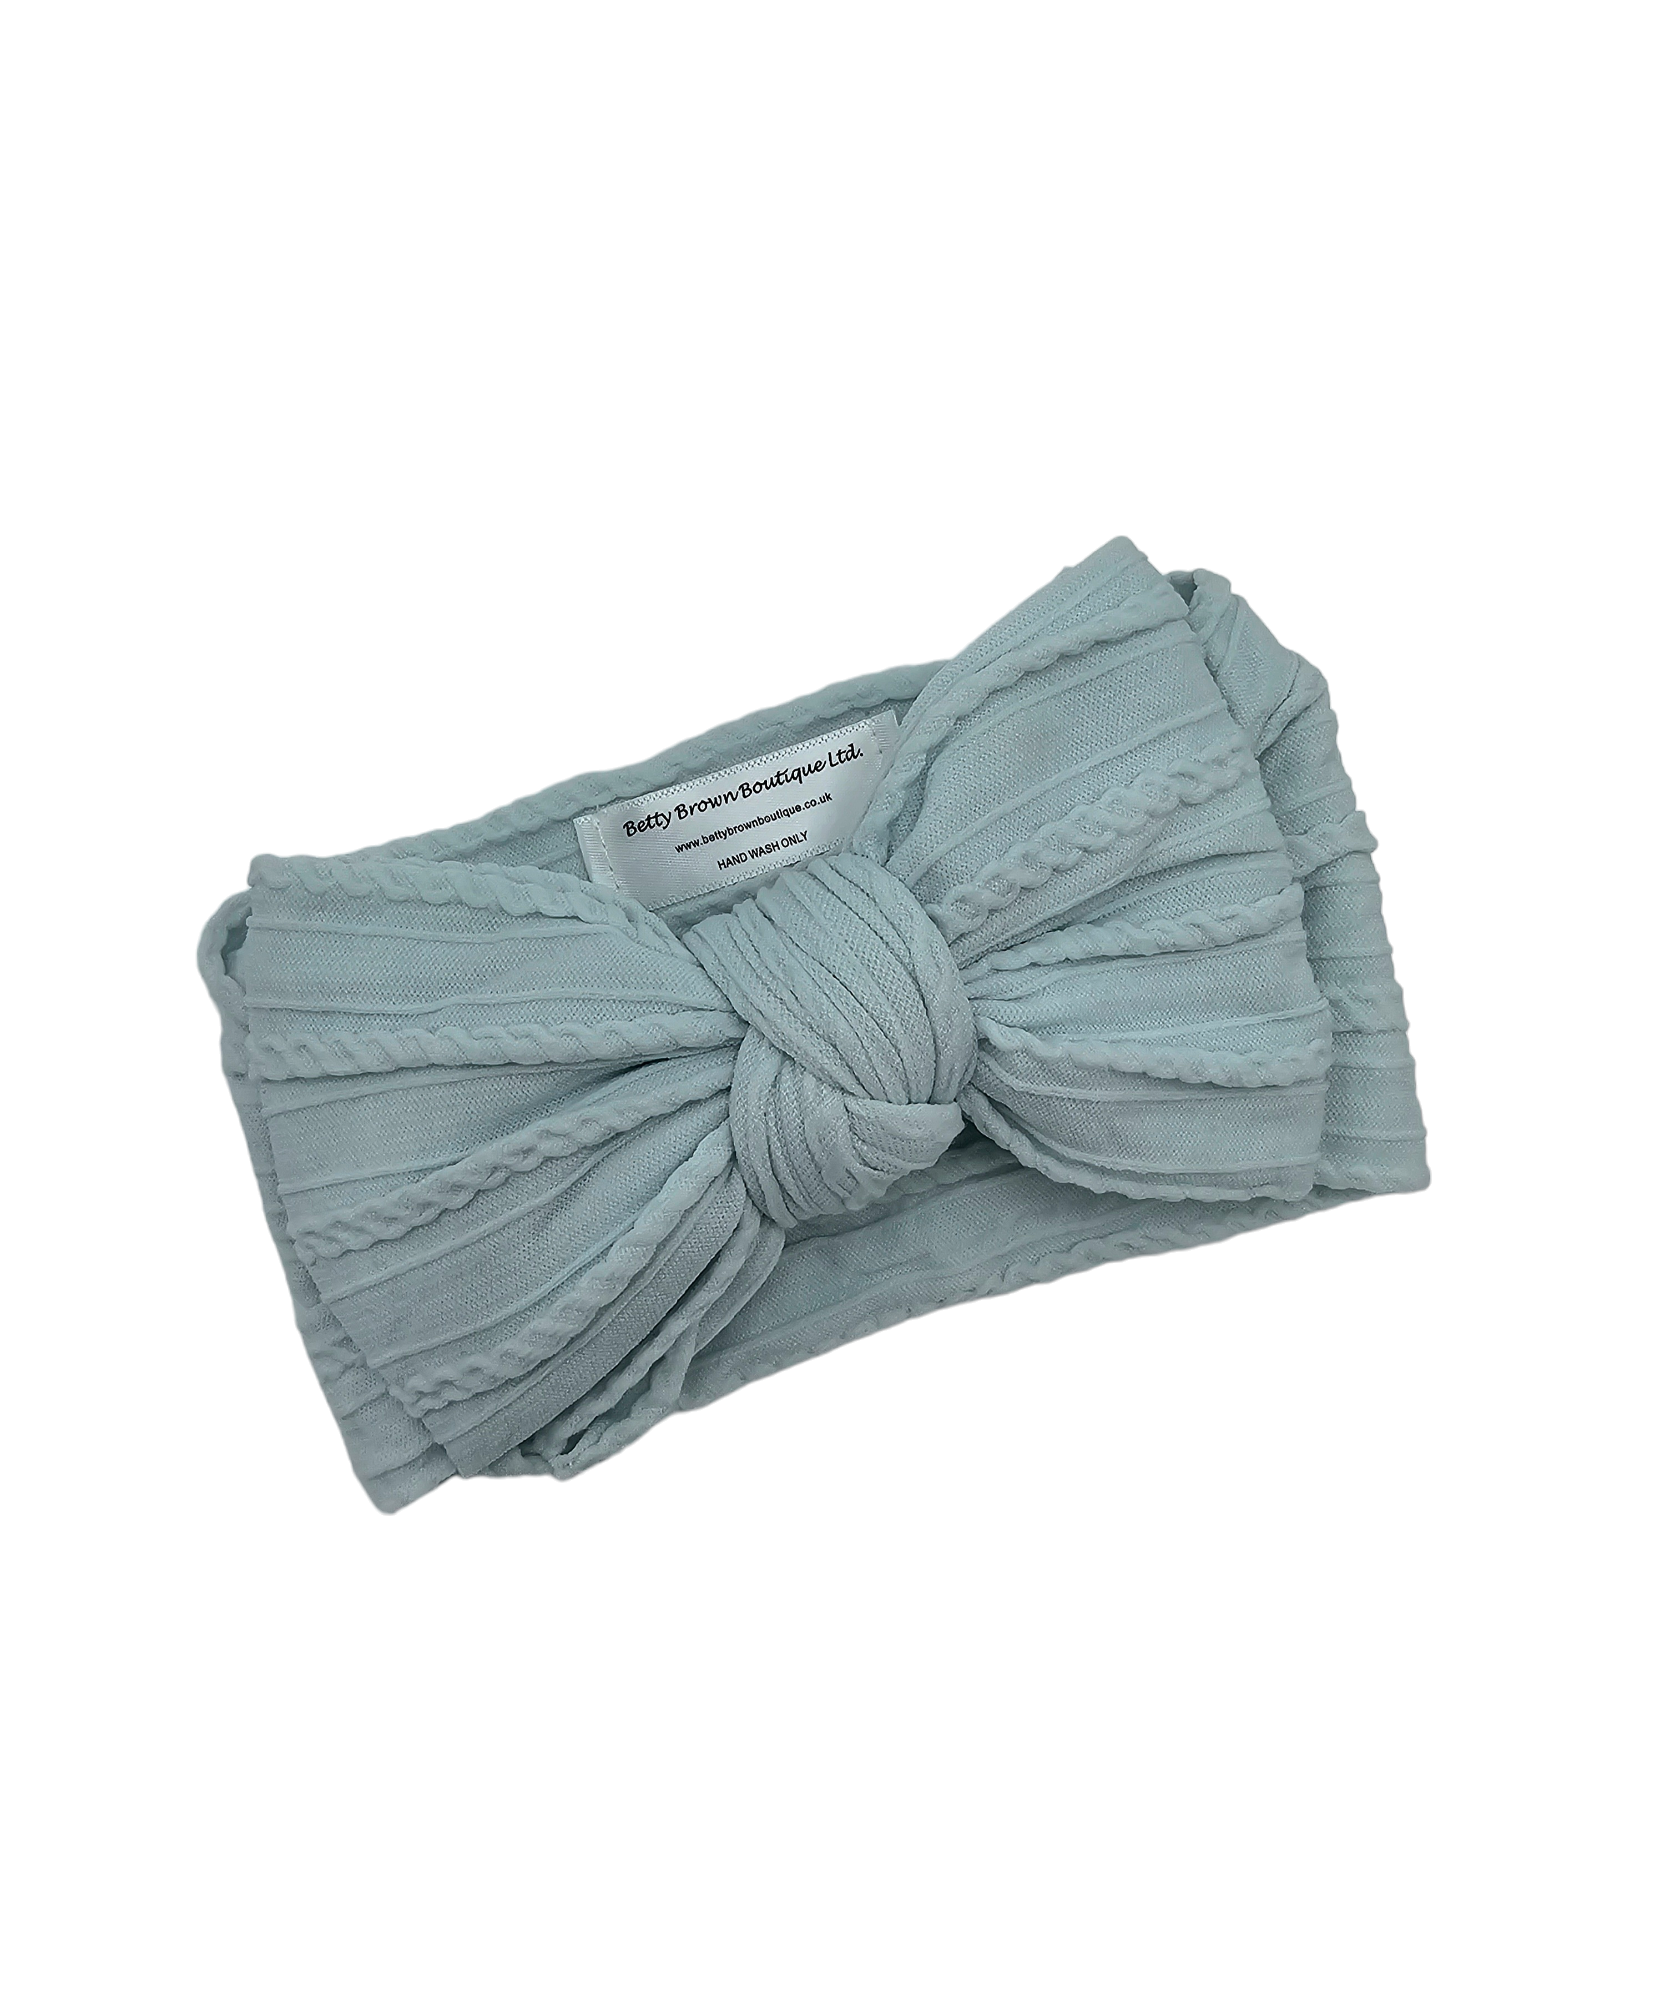 Light Aqua Larger Bow Cable Knit Headwrap - Betty Brown Boutique Ltd